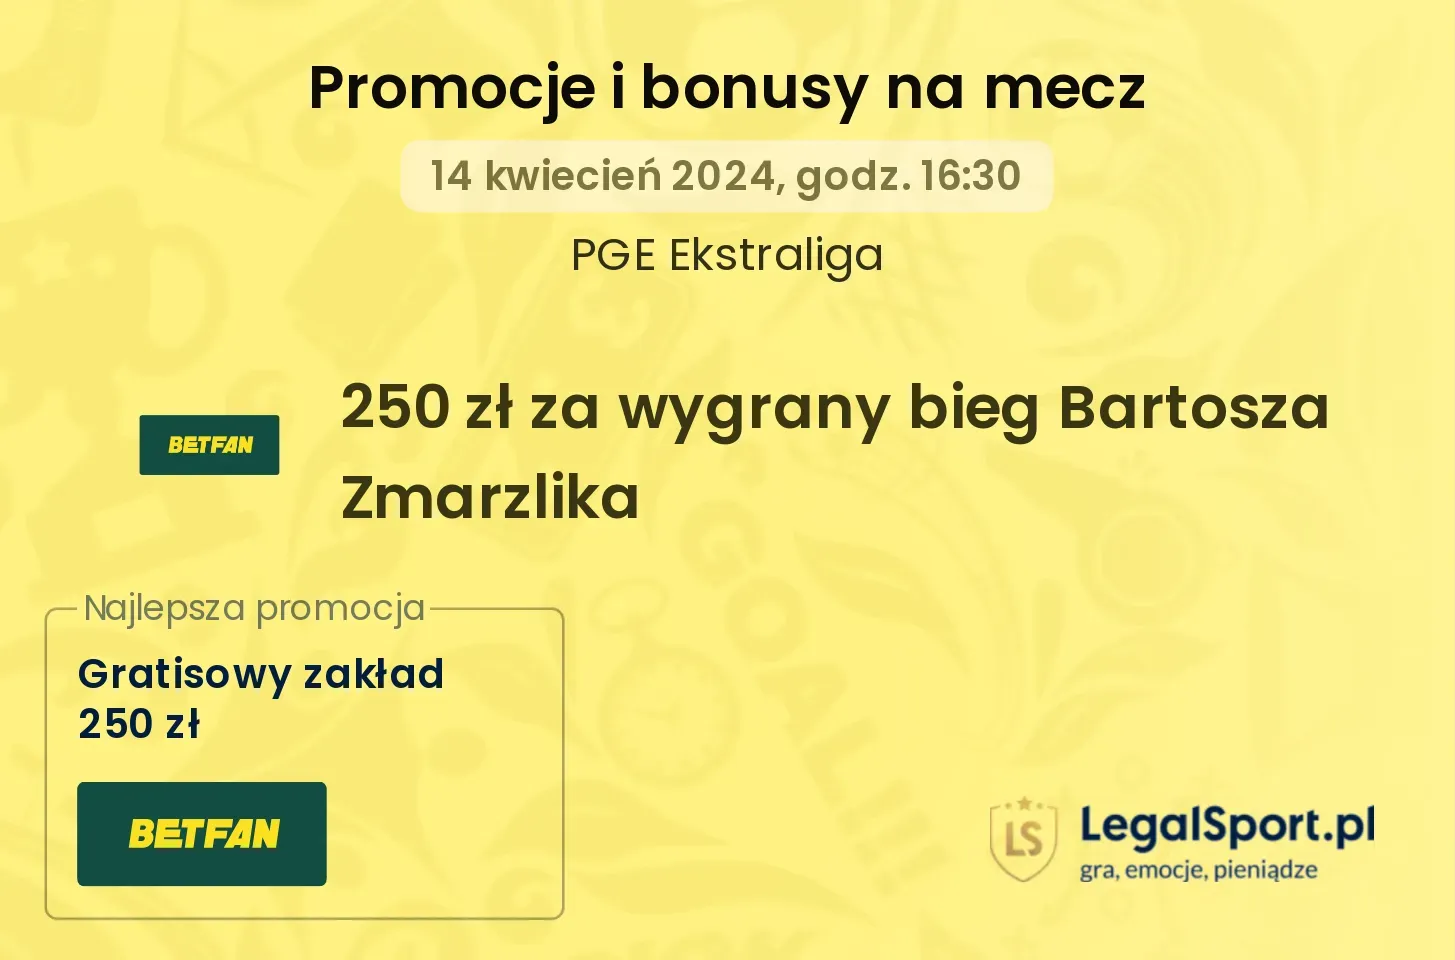 250 zł za wygrany bieg Bartosza Zmarzlika promocje bonusy na mecz